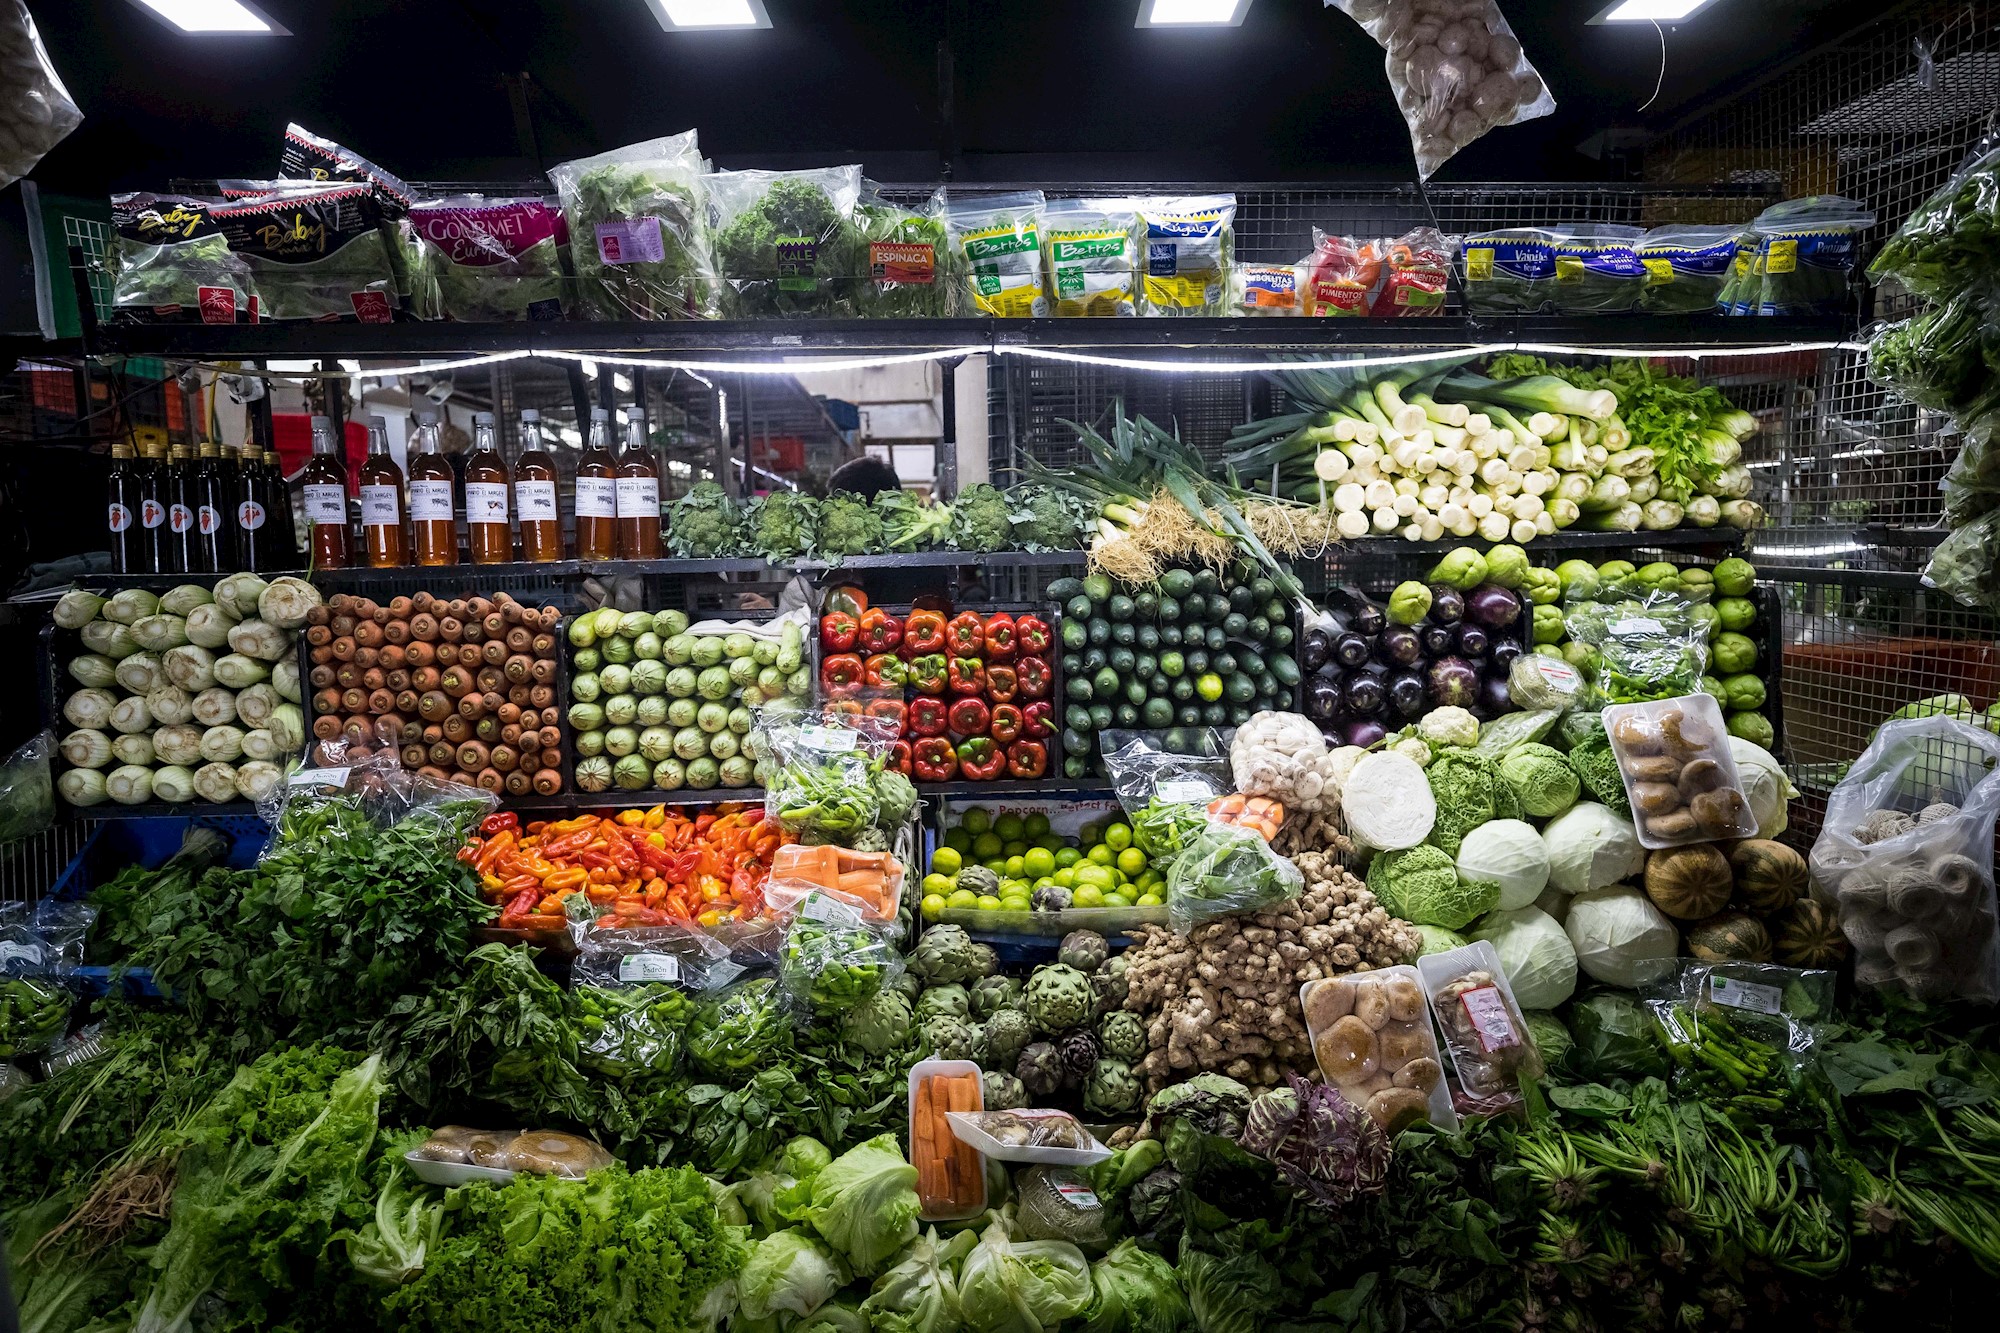 Nutricionistas recomiendan usar alimentos “al máximo” ante crisis del país